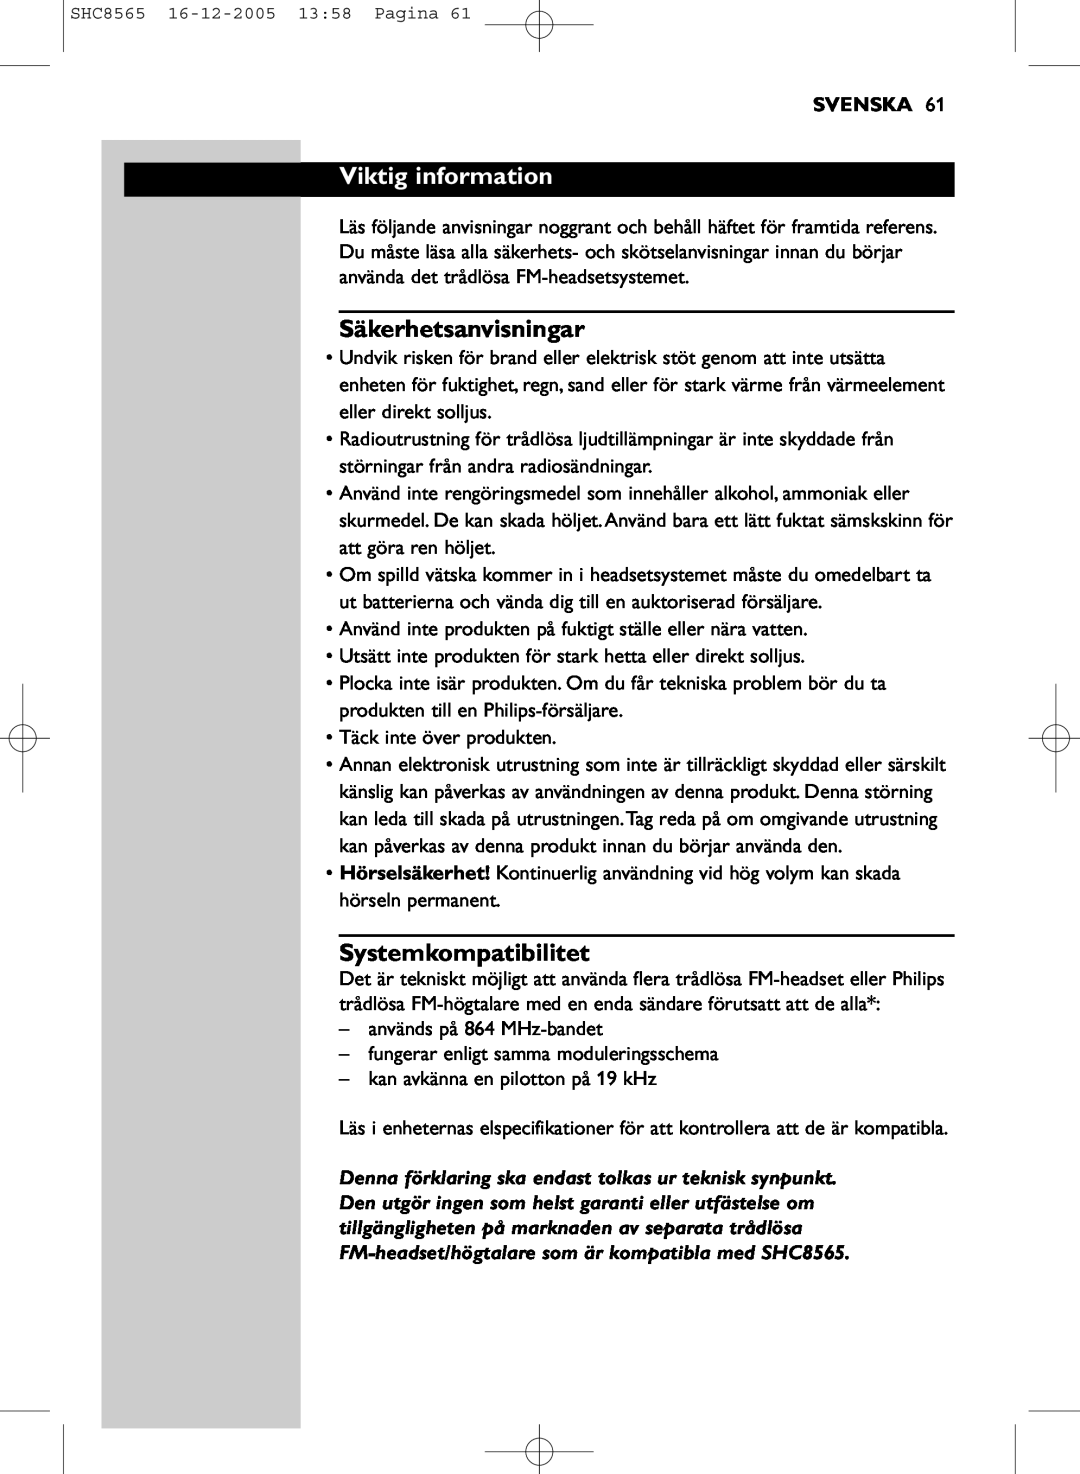 Philips SHC8565 manual Viktig information, Säkerhetsanvisningar, Systemkompatibilitet, Svenska 